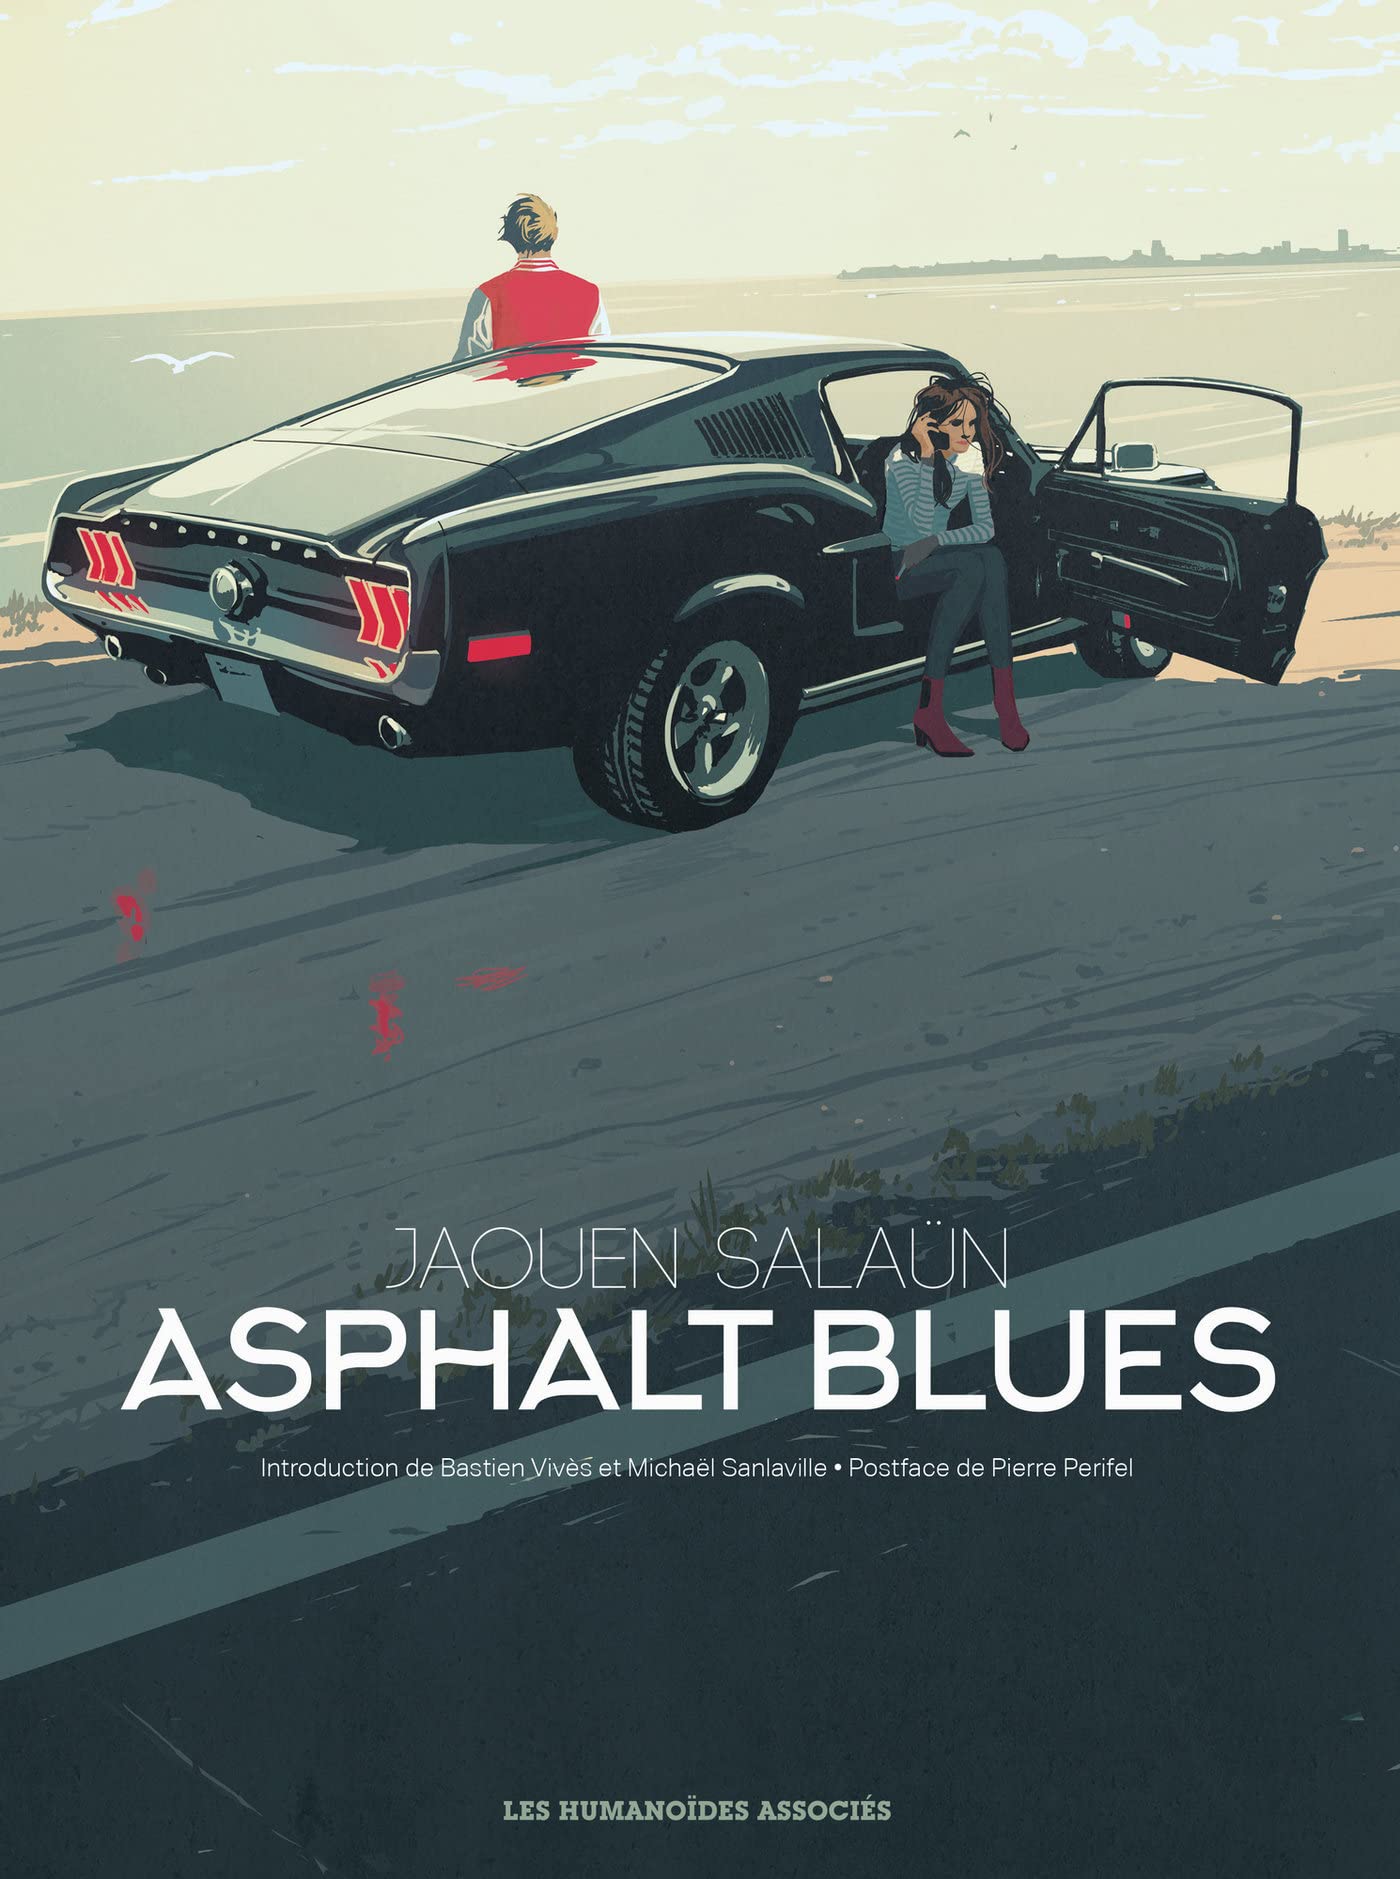 asphalt-blues